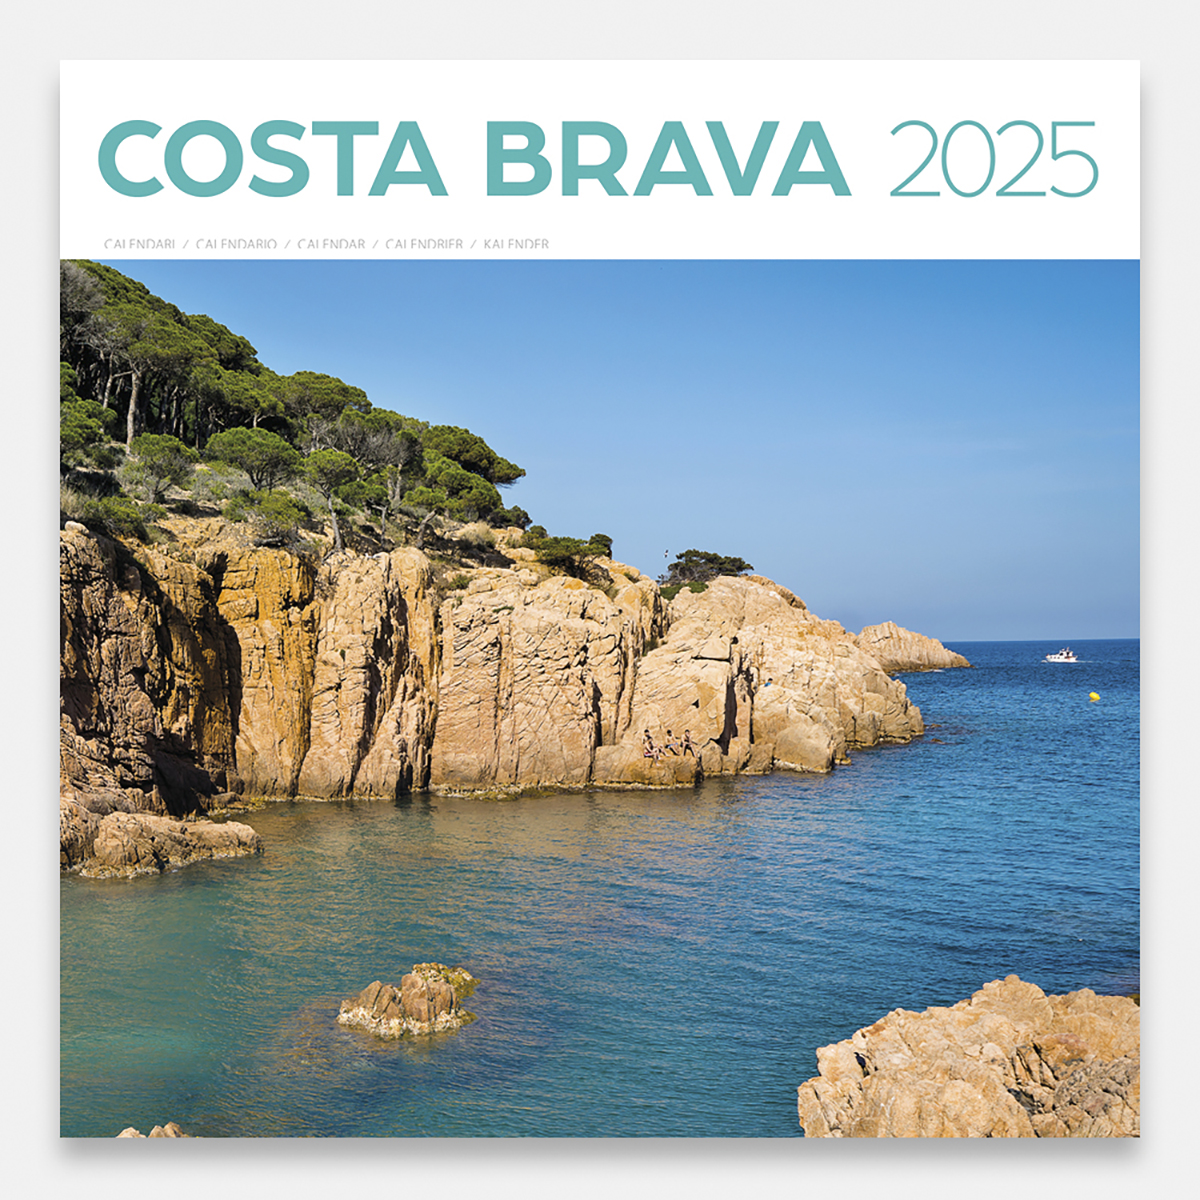 Calendario 2025 Costa Brava / Girona 25cbg calendario pared 2025 costa brava